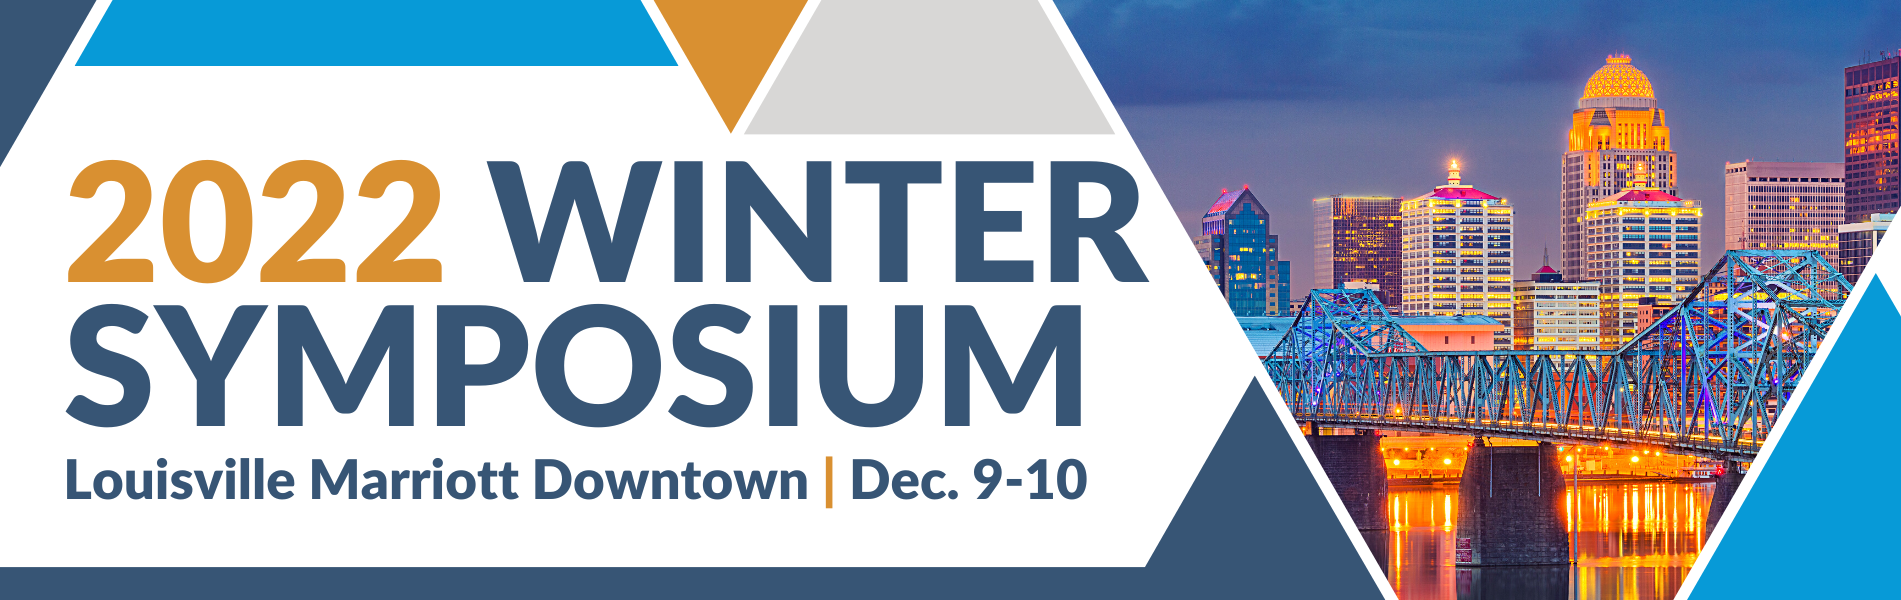 2022 Winter Symposium - register now